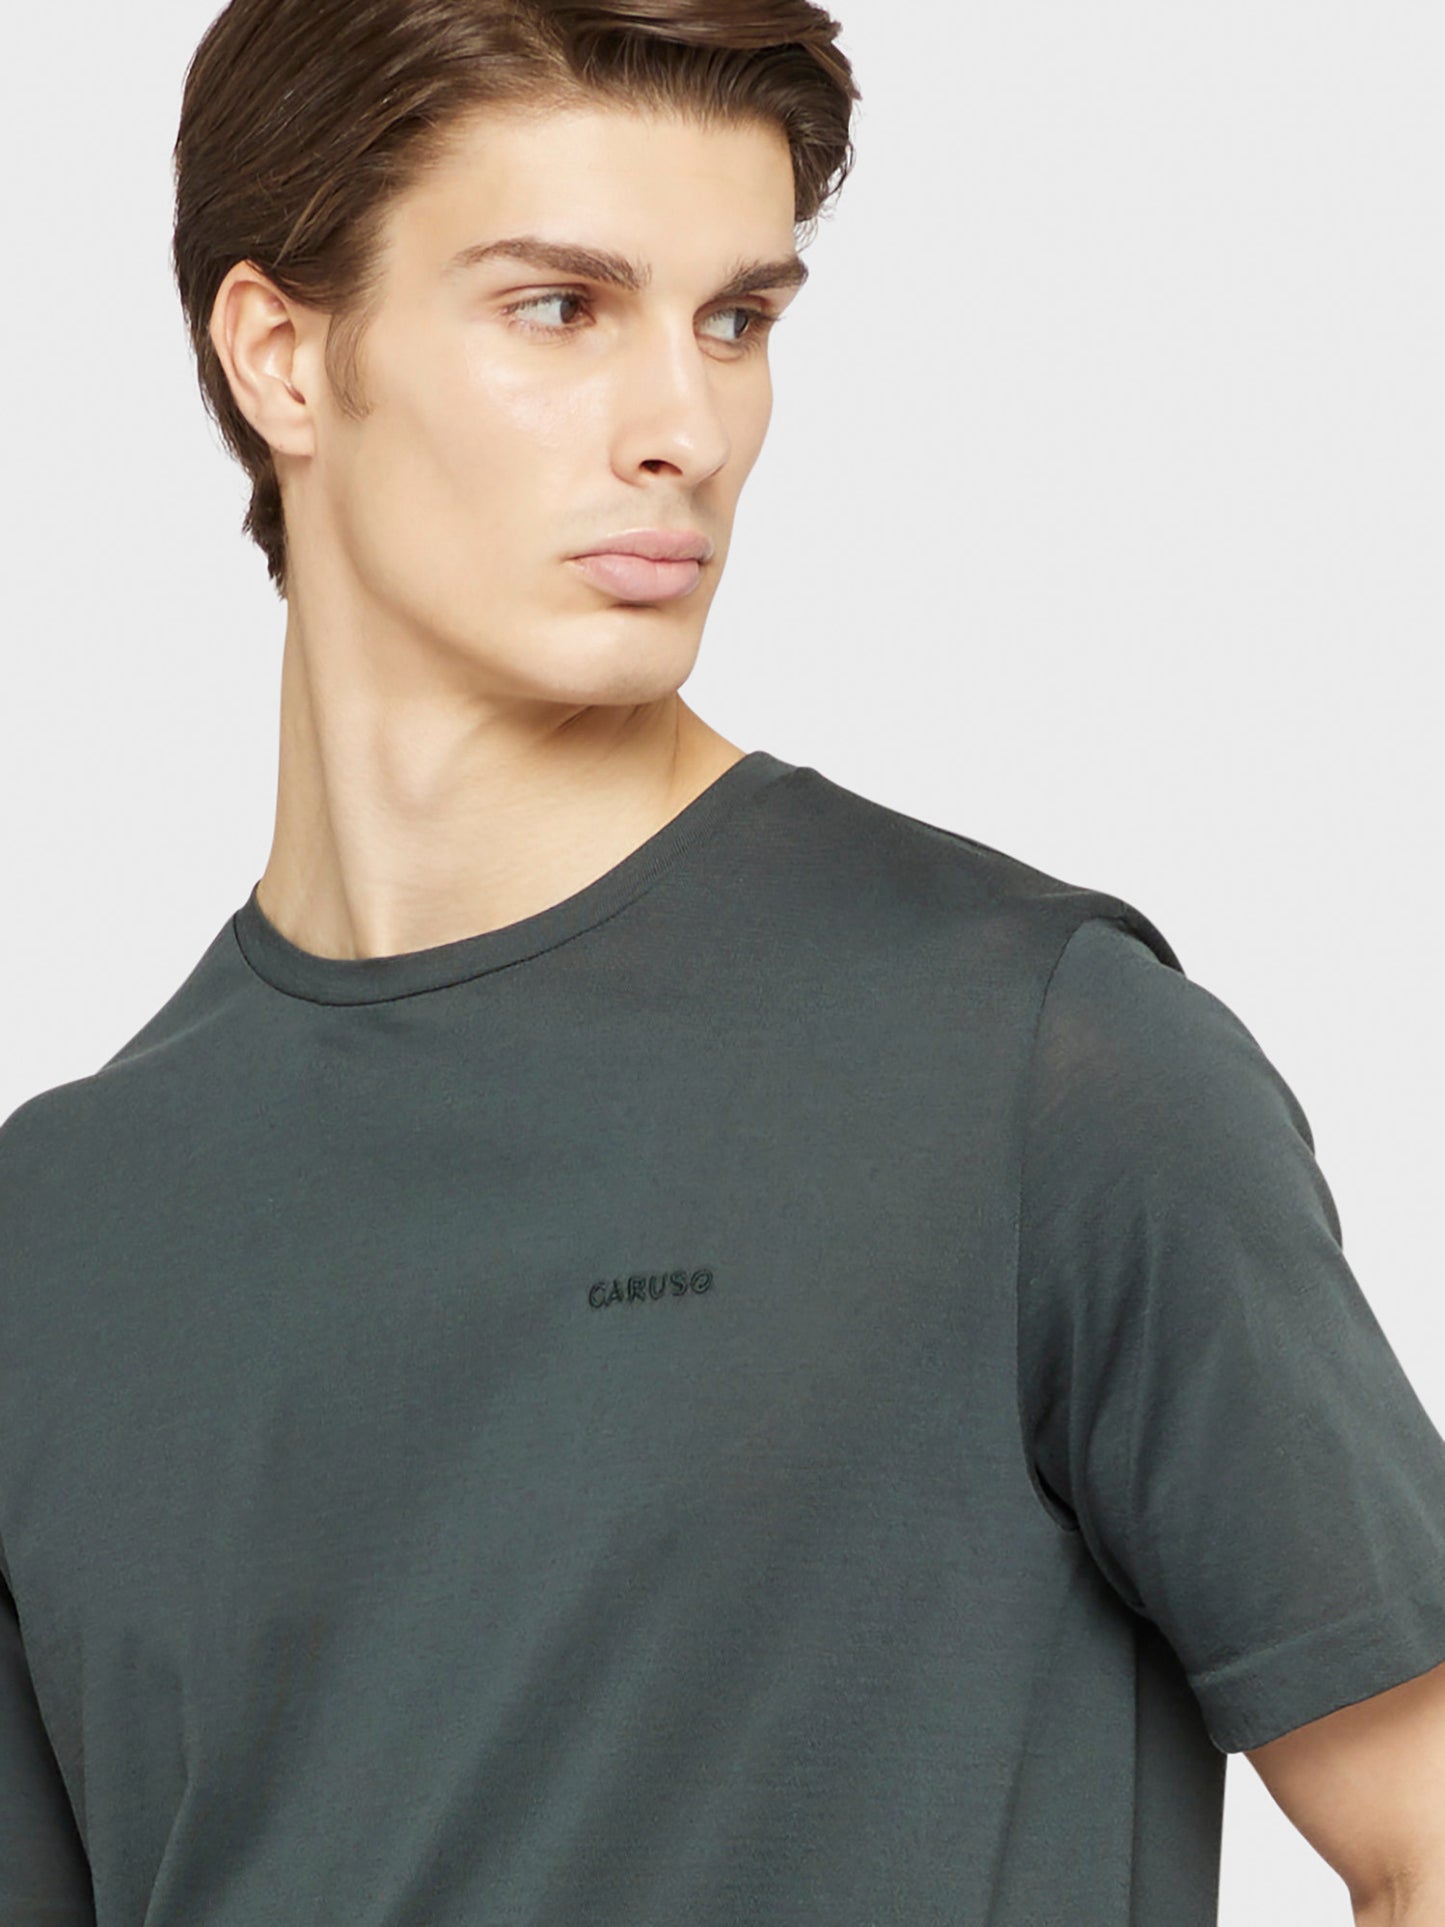 Caruso Menswear Abbigliamento Uomo T-Shirt girocollo seamless in jersey carbone dettaglio